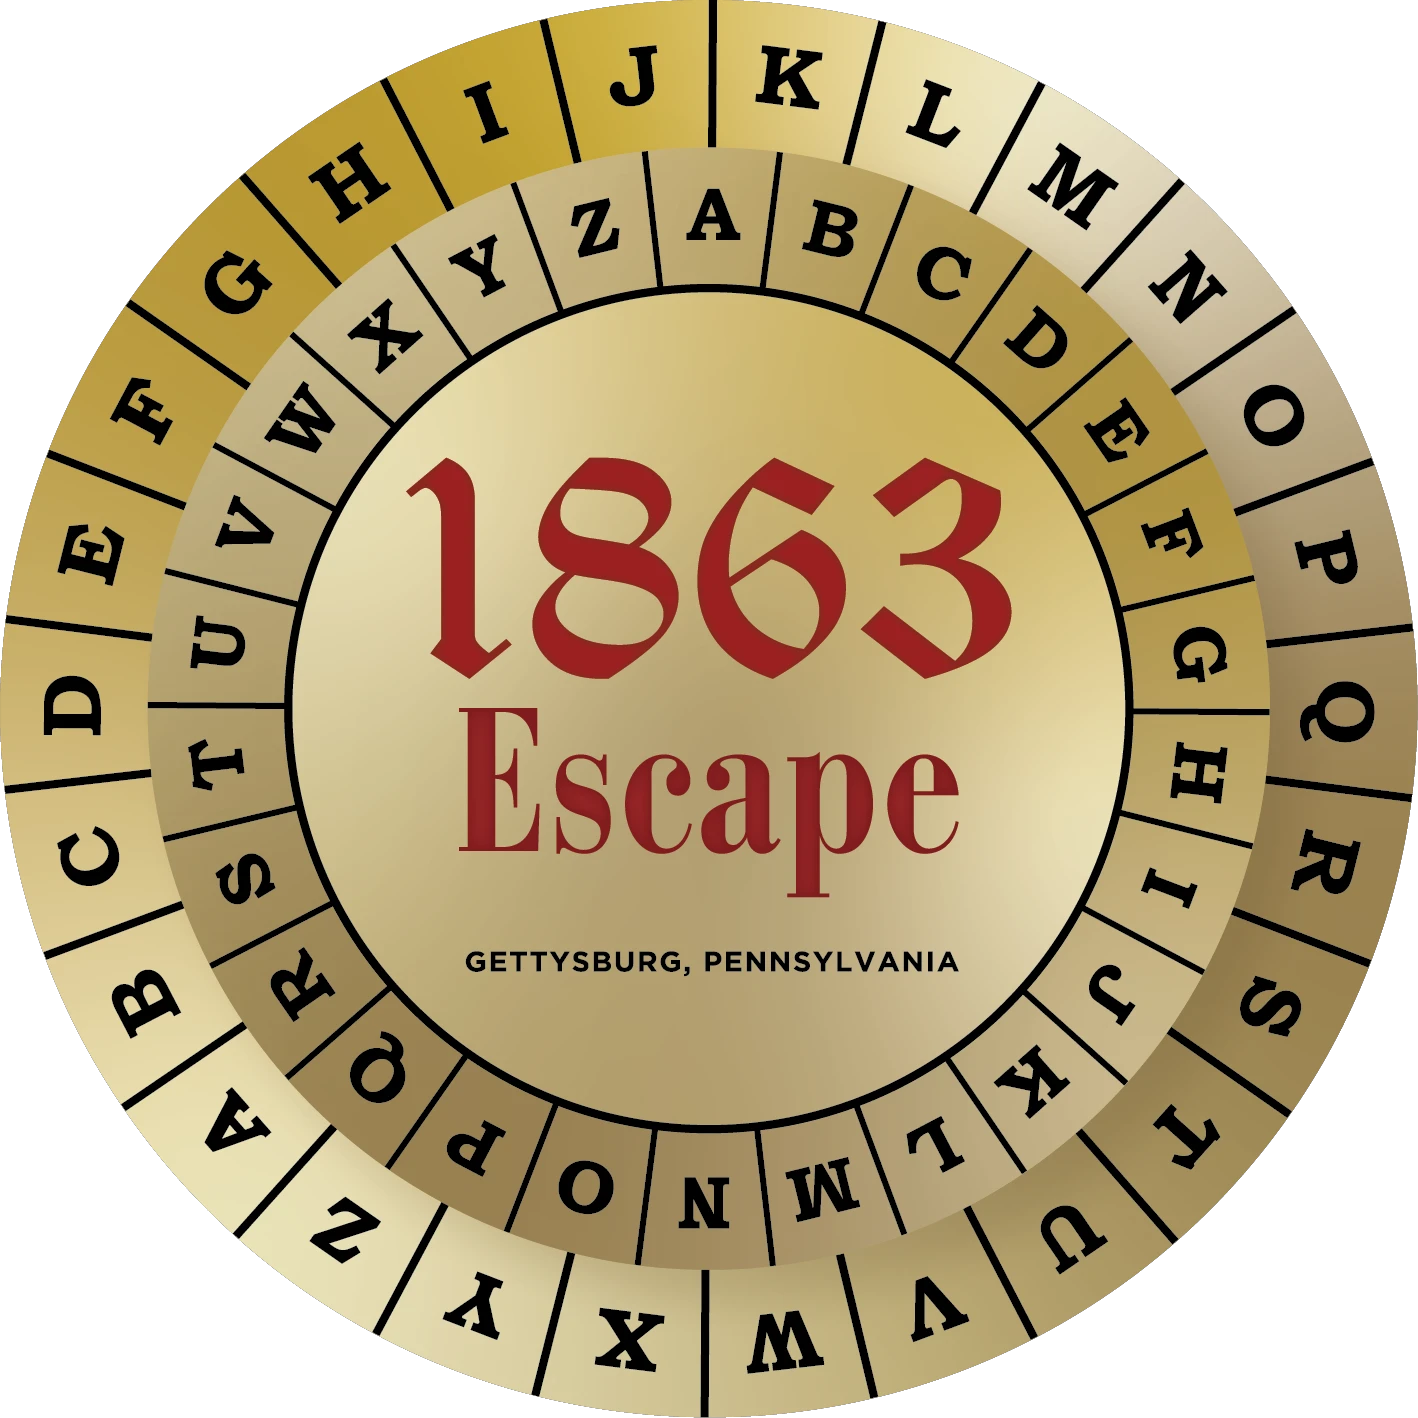 1863 Escape